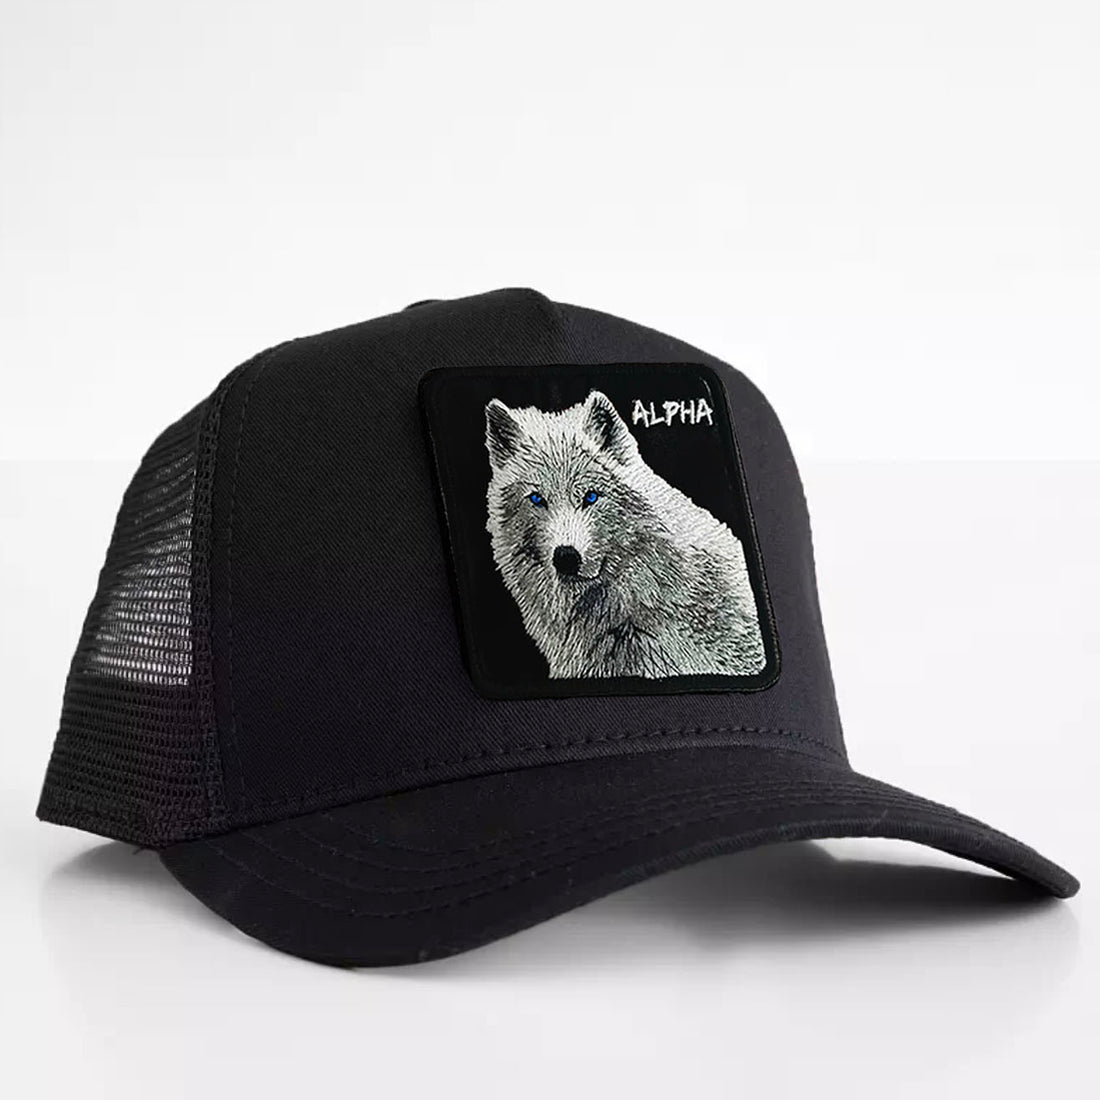 Wolf - "Alpha" Trucker Hat